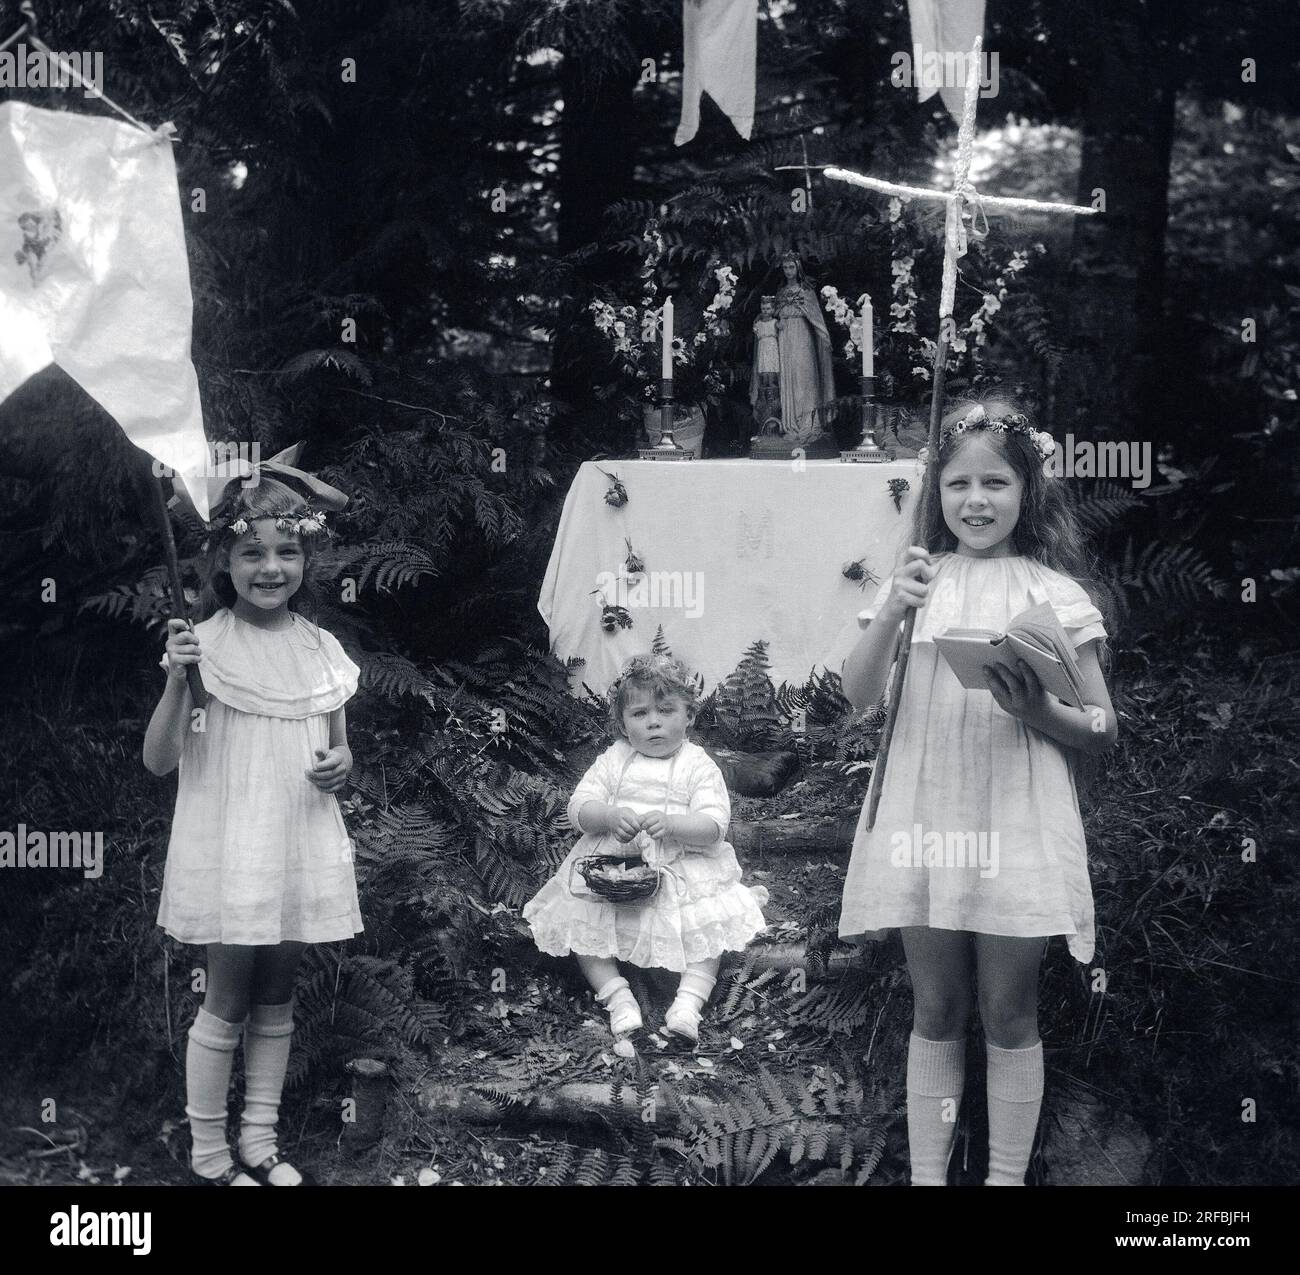 Trois petites filles, en robes de dentelle, portant croix, panier et fanion, devant un autel dedie a la Vierge, en pleine nature. Bretagne (France), photographie 1921-1922. Stock Photo